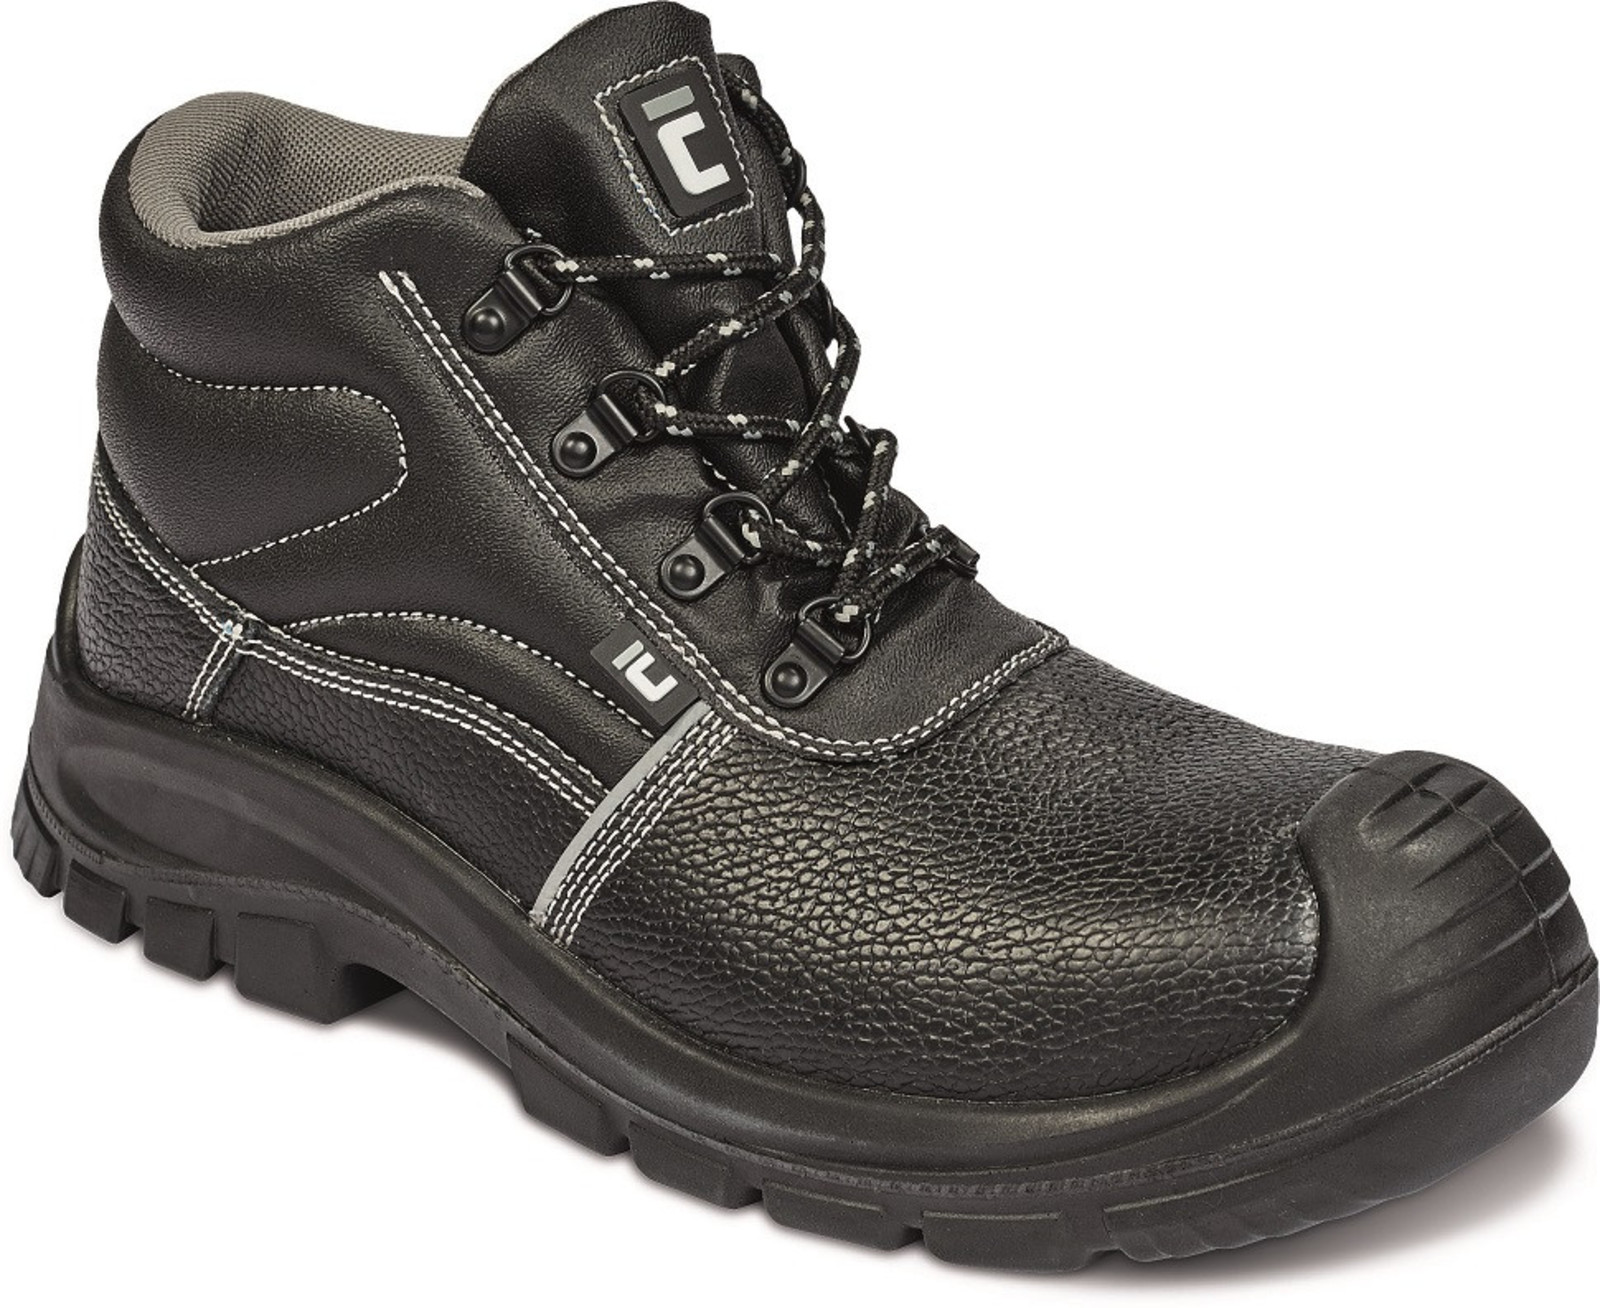 Bezpečnostná obuv Raven XT S3 Metal Free - veľkosť: 41, farba: čierna